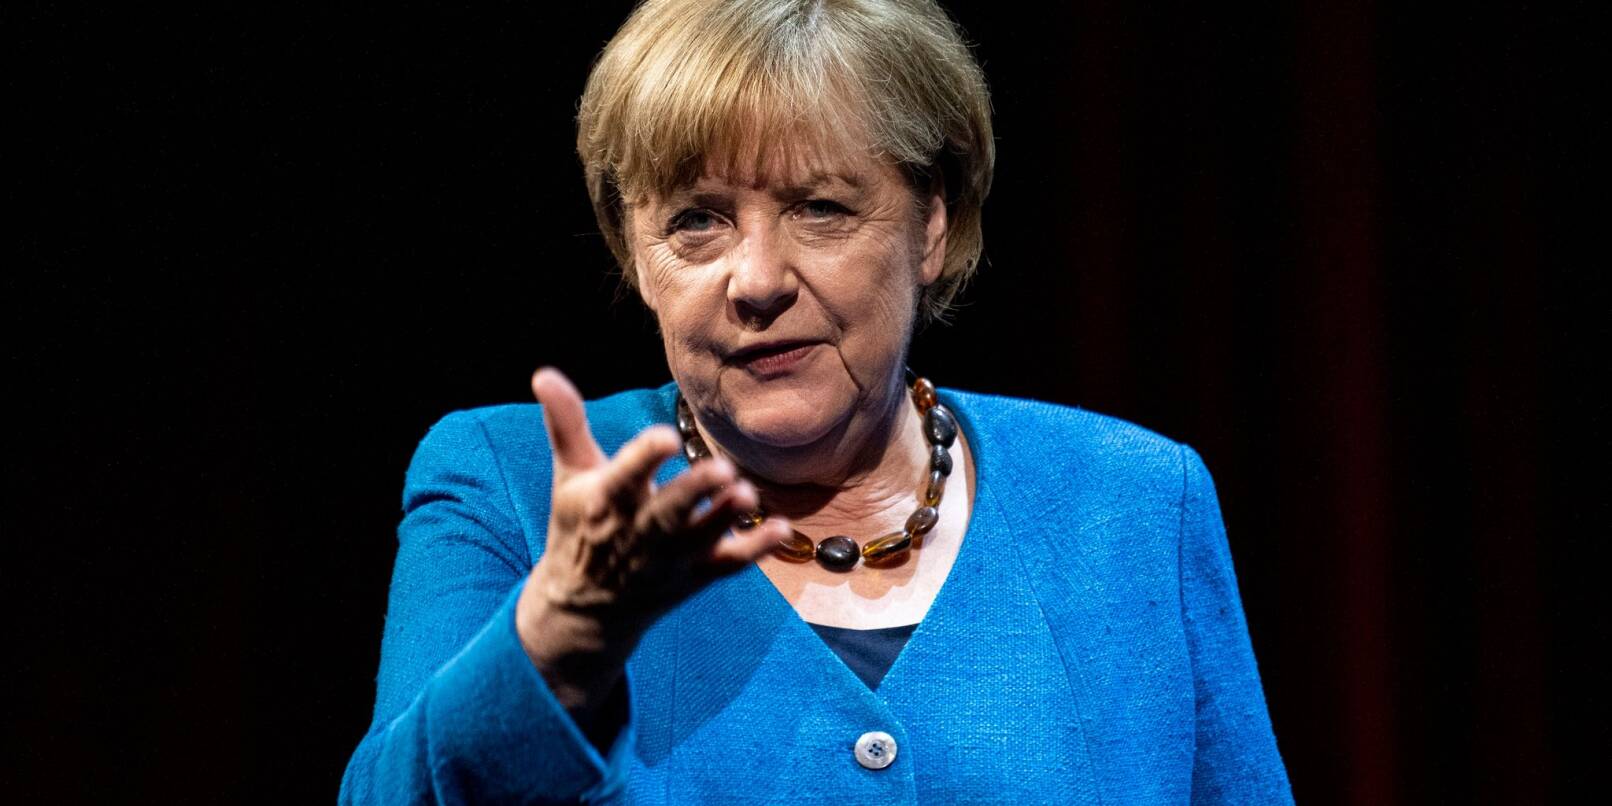 Die ehemalige Bundeskanzlerin Angela Merkel.